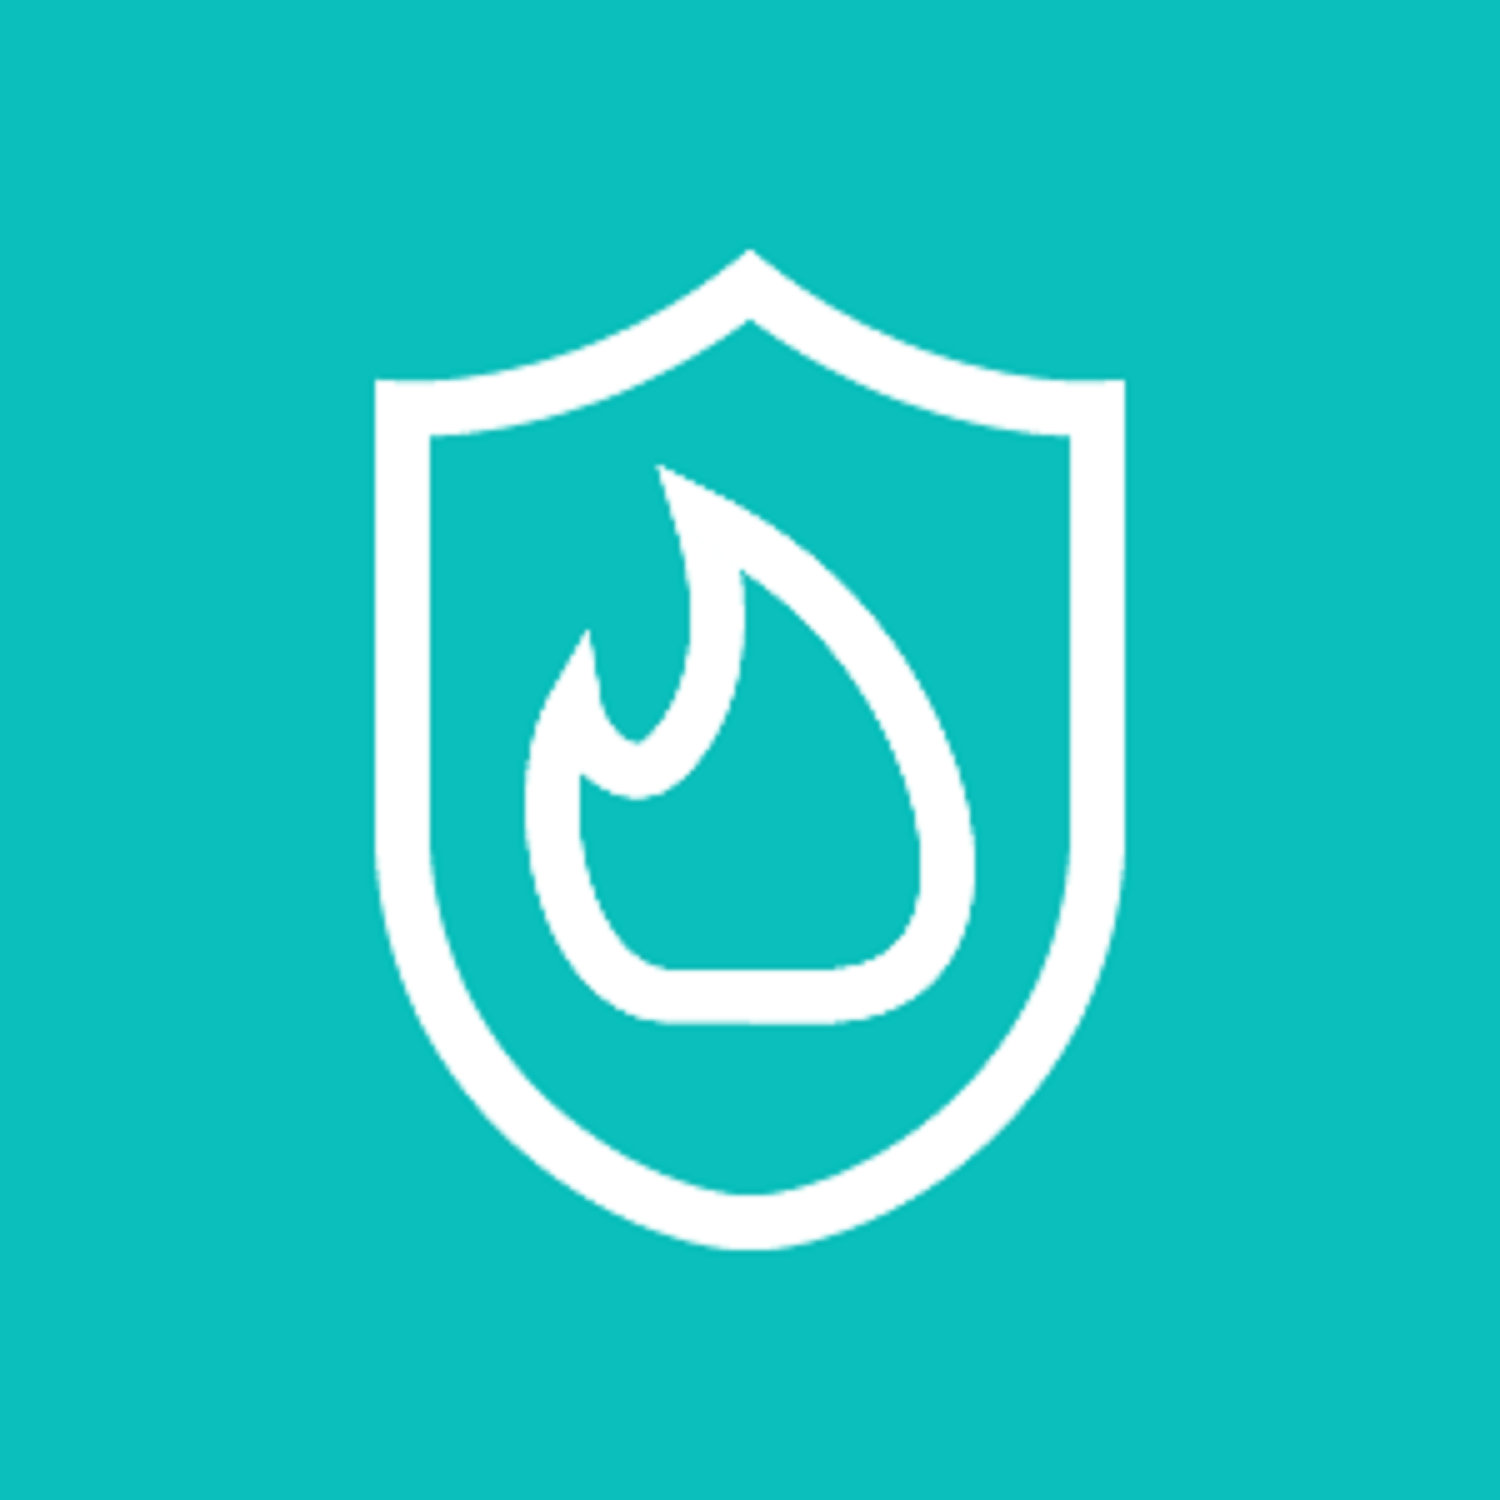 Logo Arbeitsschutz Digital - Weiße Flamme und Wappen auf türkisem Hintergrund